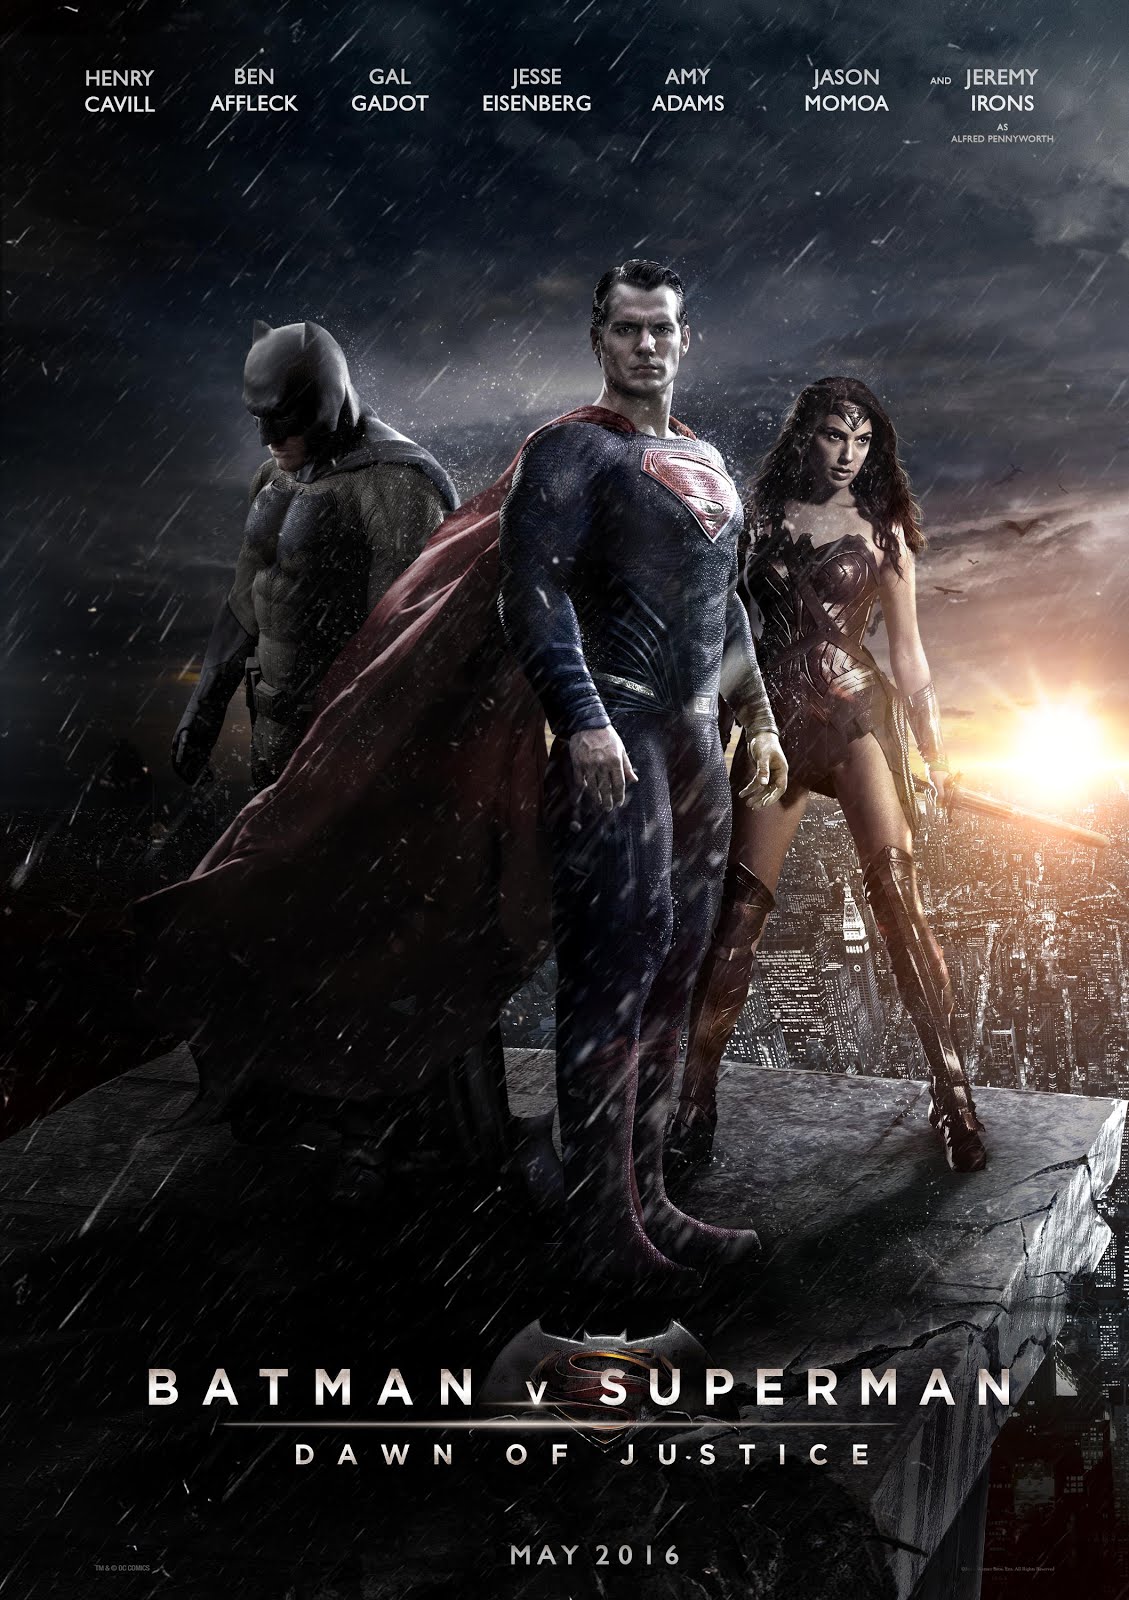 BATMAN VS SUPERMAN: Dawn Of Justice